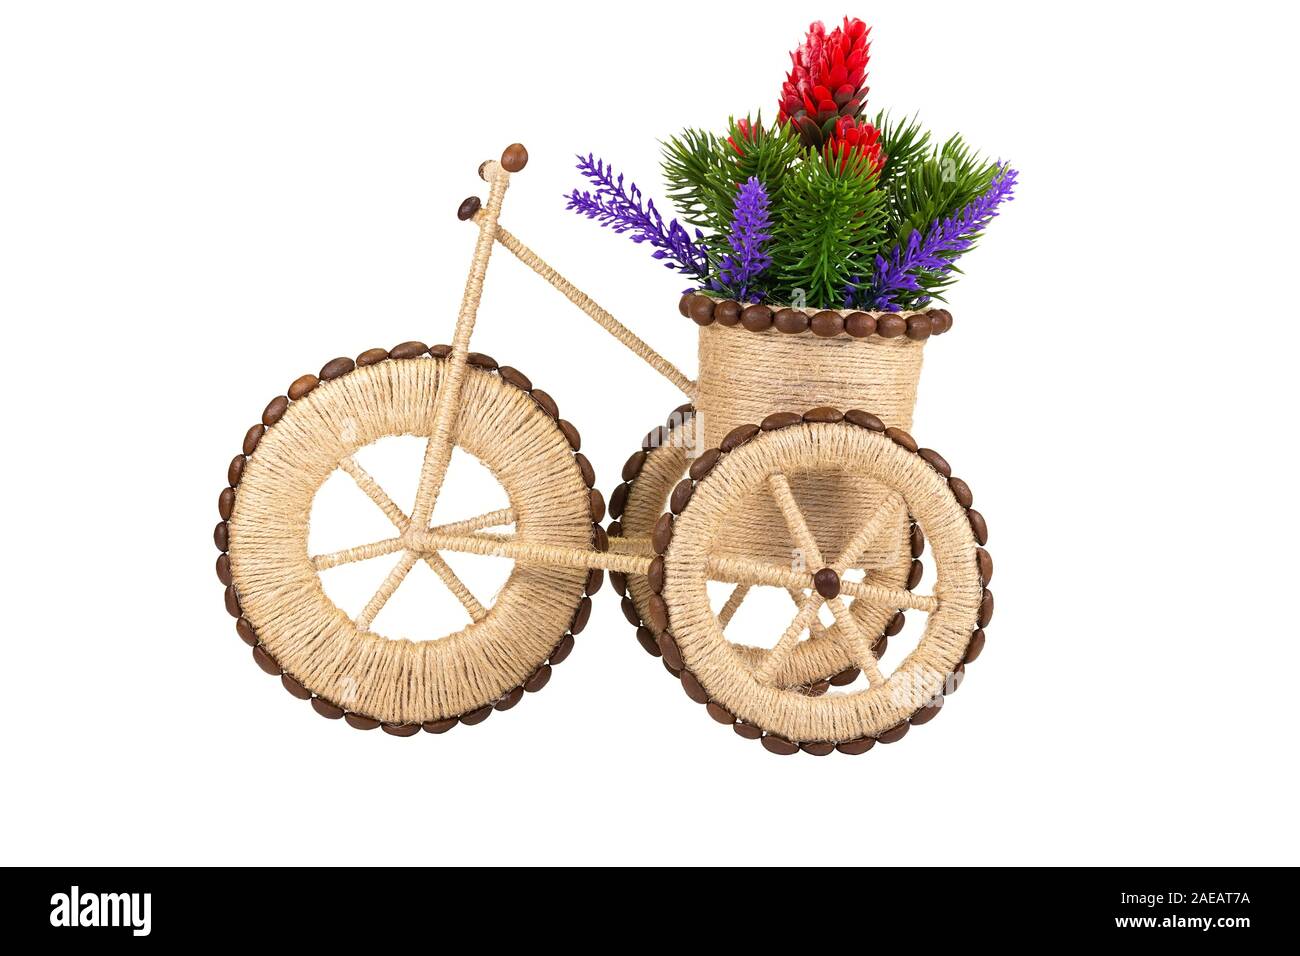 Tricycle stylisée avec un panier de fleurs fait de la ficelle et les grains de café. Passe-temps et artisanat.Isolated on white Banque D'Images